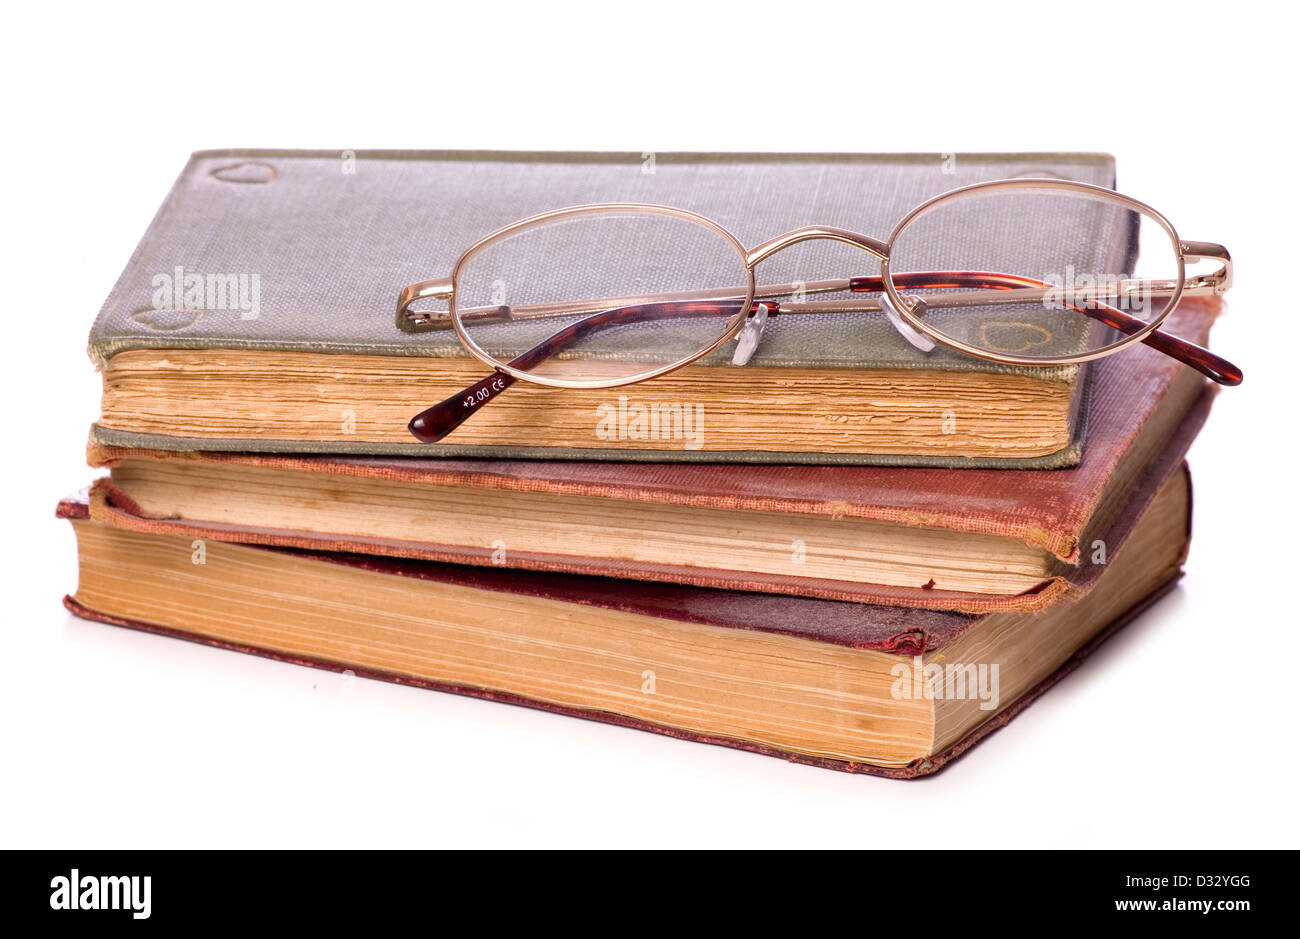 Pila de libros antiguos y gafas de lectura studio recorte Foto de stock